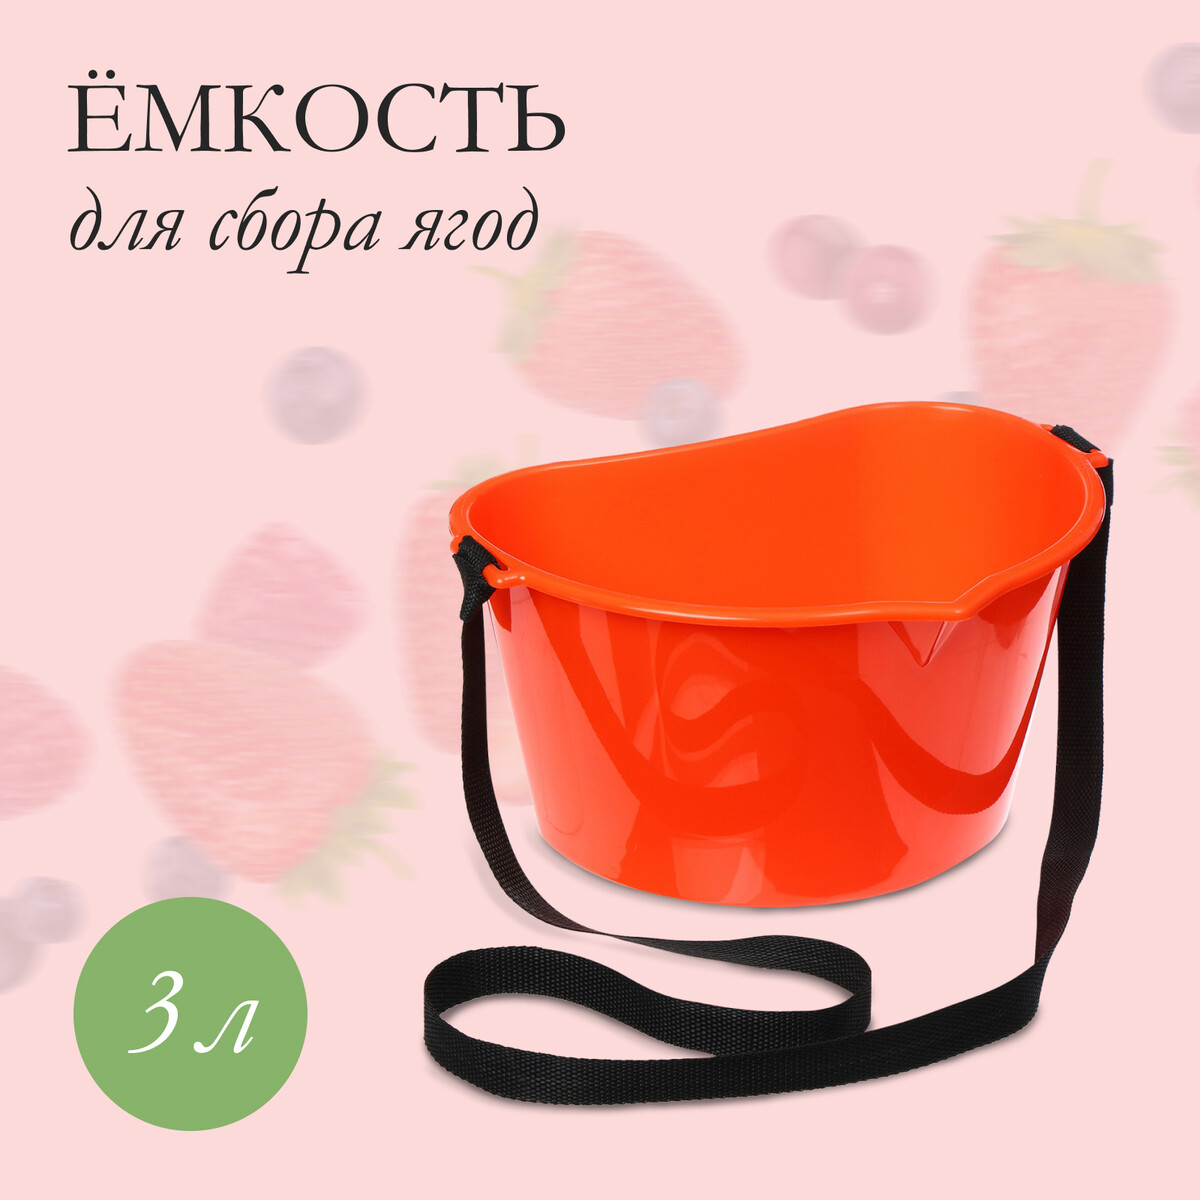 Ёмкость для сбора ягод, 3 л, оранжевая мясорубка kitfort kt 2101 3 оранжевая